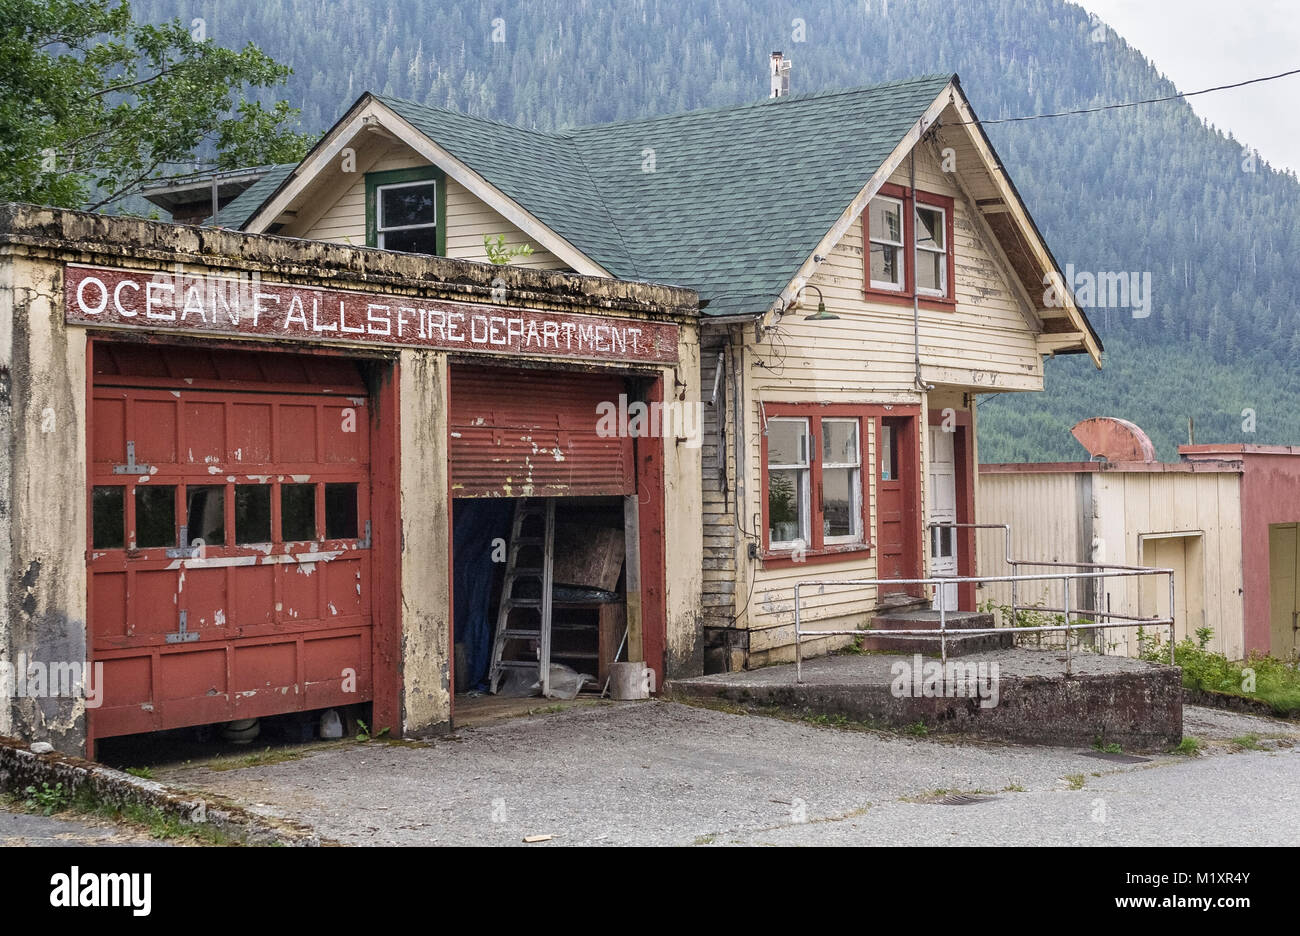 Nicht mehr in Gebrauch, die historische Feuerwehr Halle noch in den Ozean fällt steht, eine Geisterstadt Inmitten der bewaldeten Berge in British Columbia Küste. Stockfoto